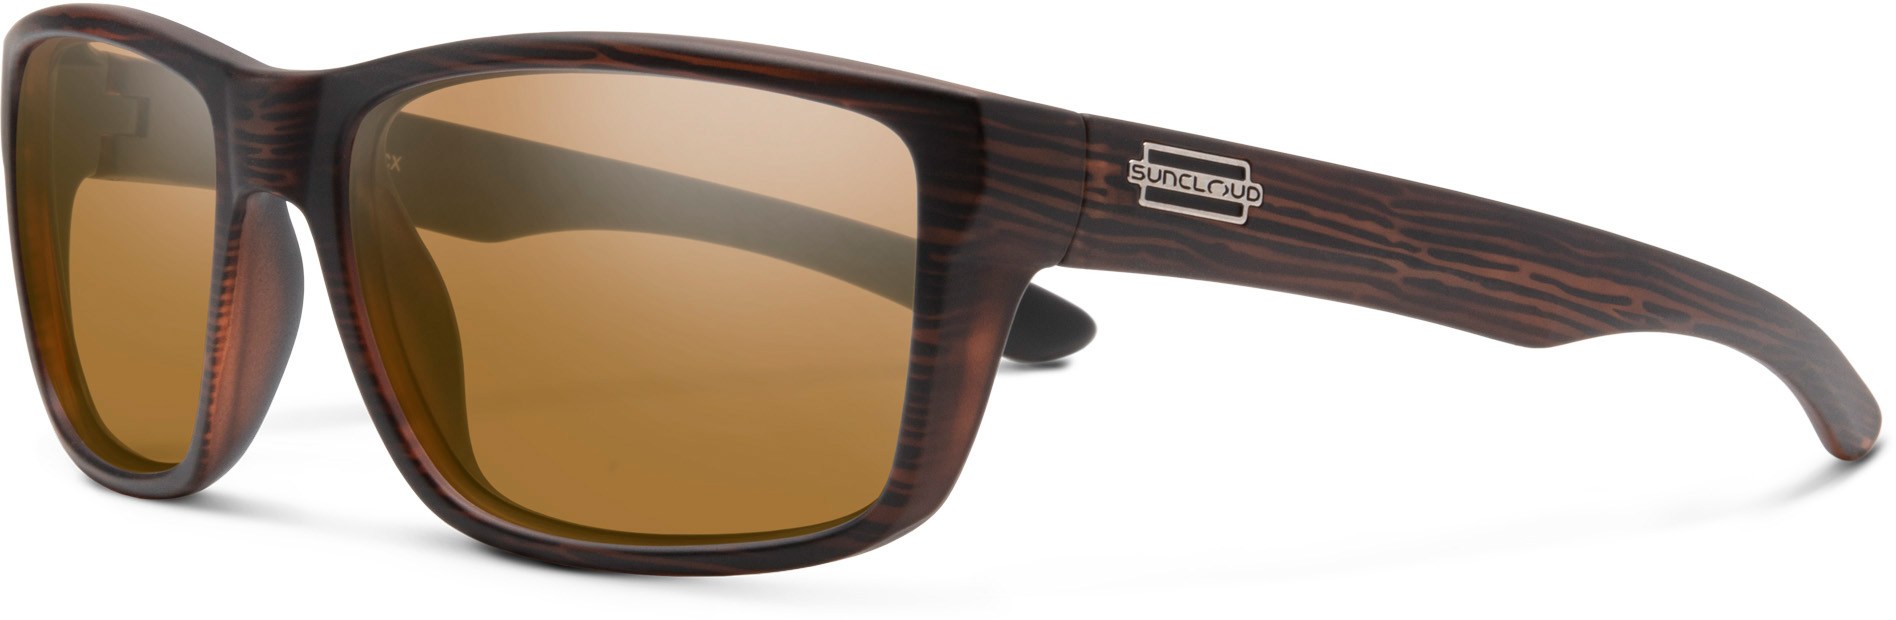 цена Поляризованные солнцезащитные очки Mayor Suncloud, коричневый